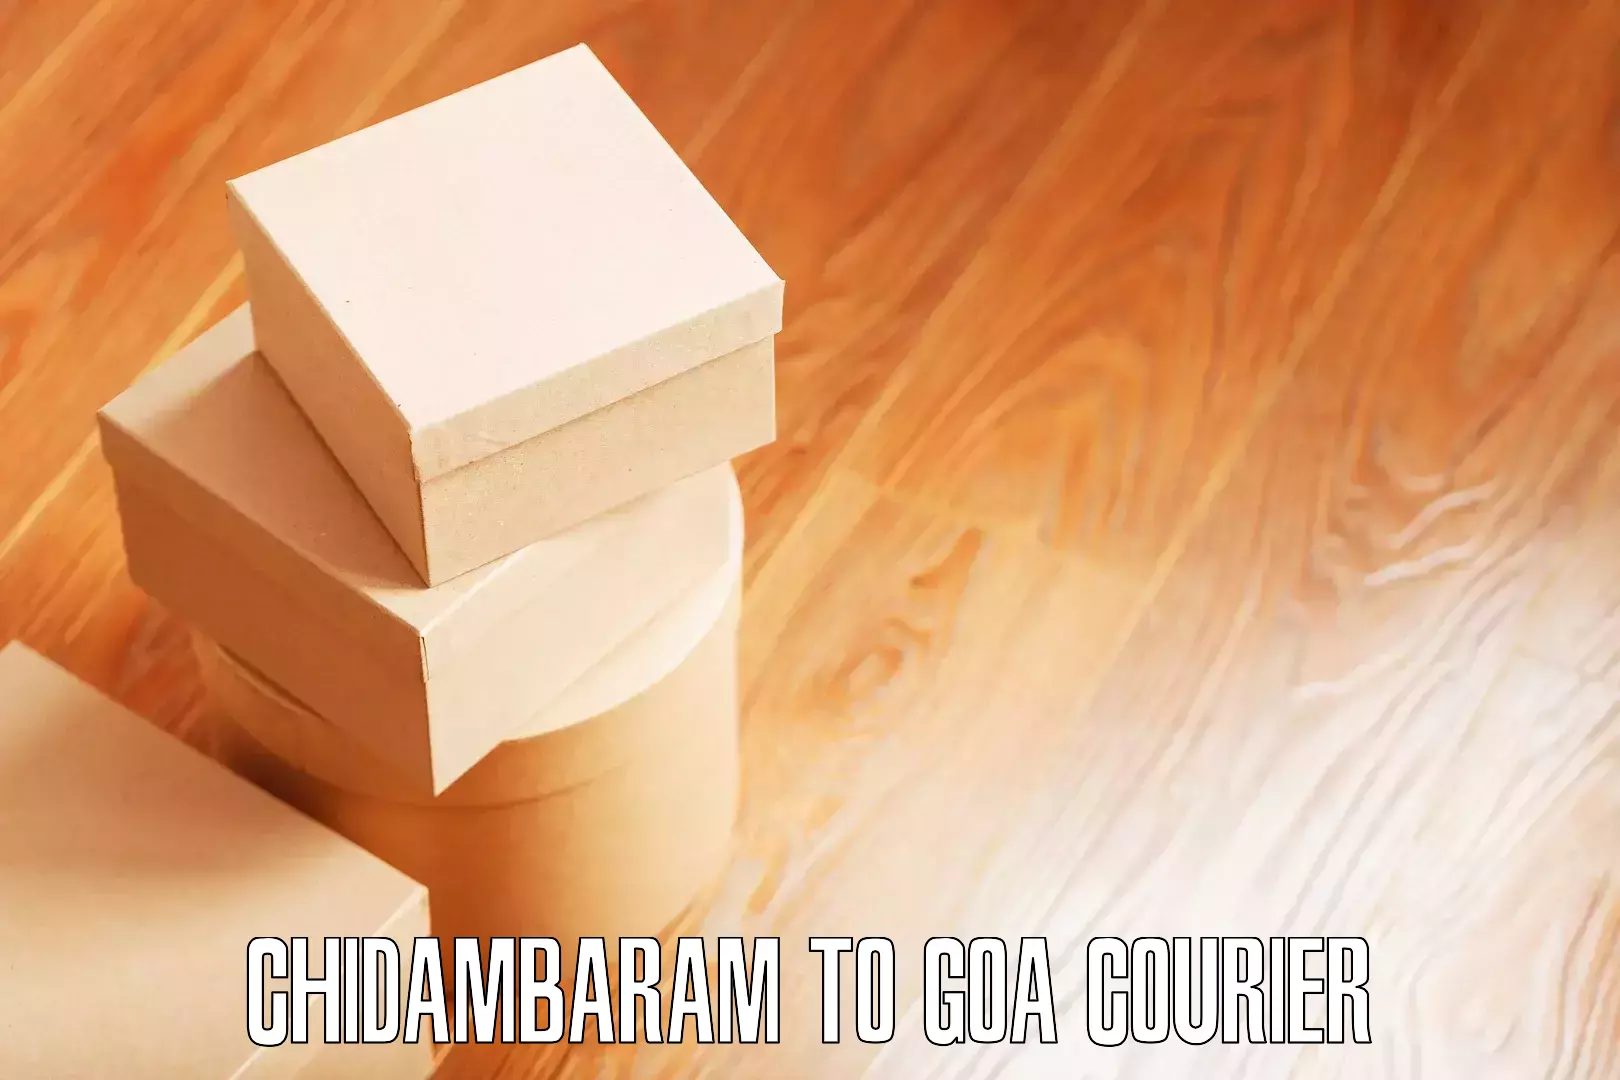 Household moving experts Chidambaram to Vasco da Gama